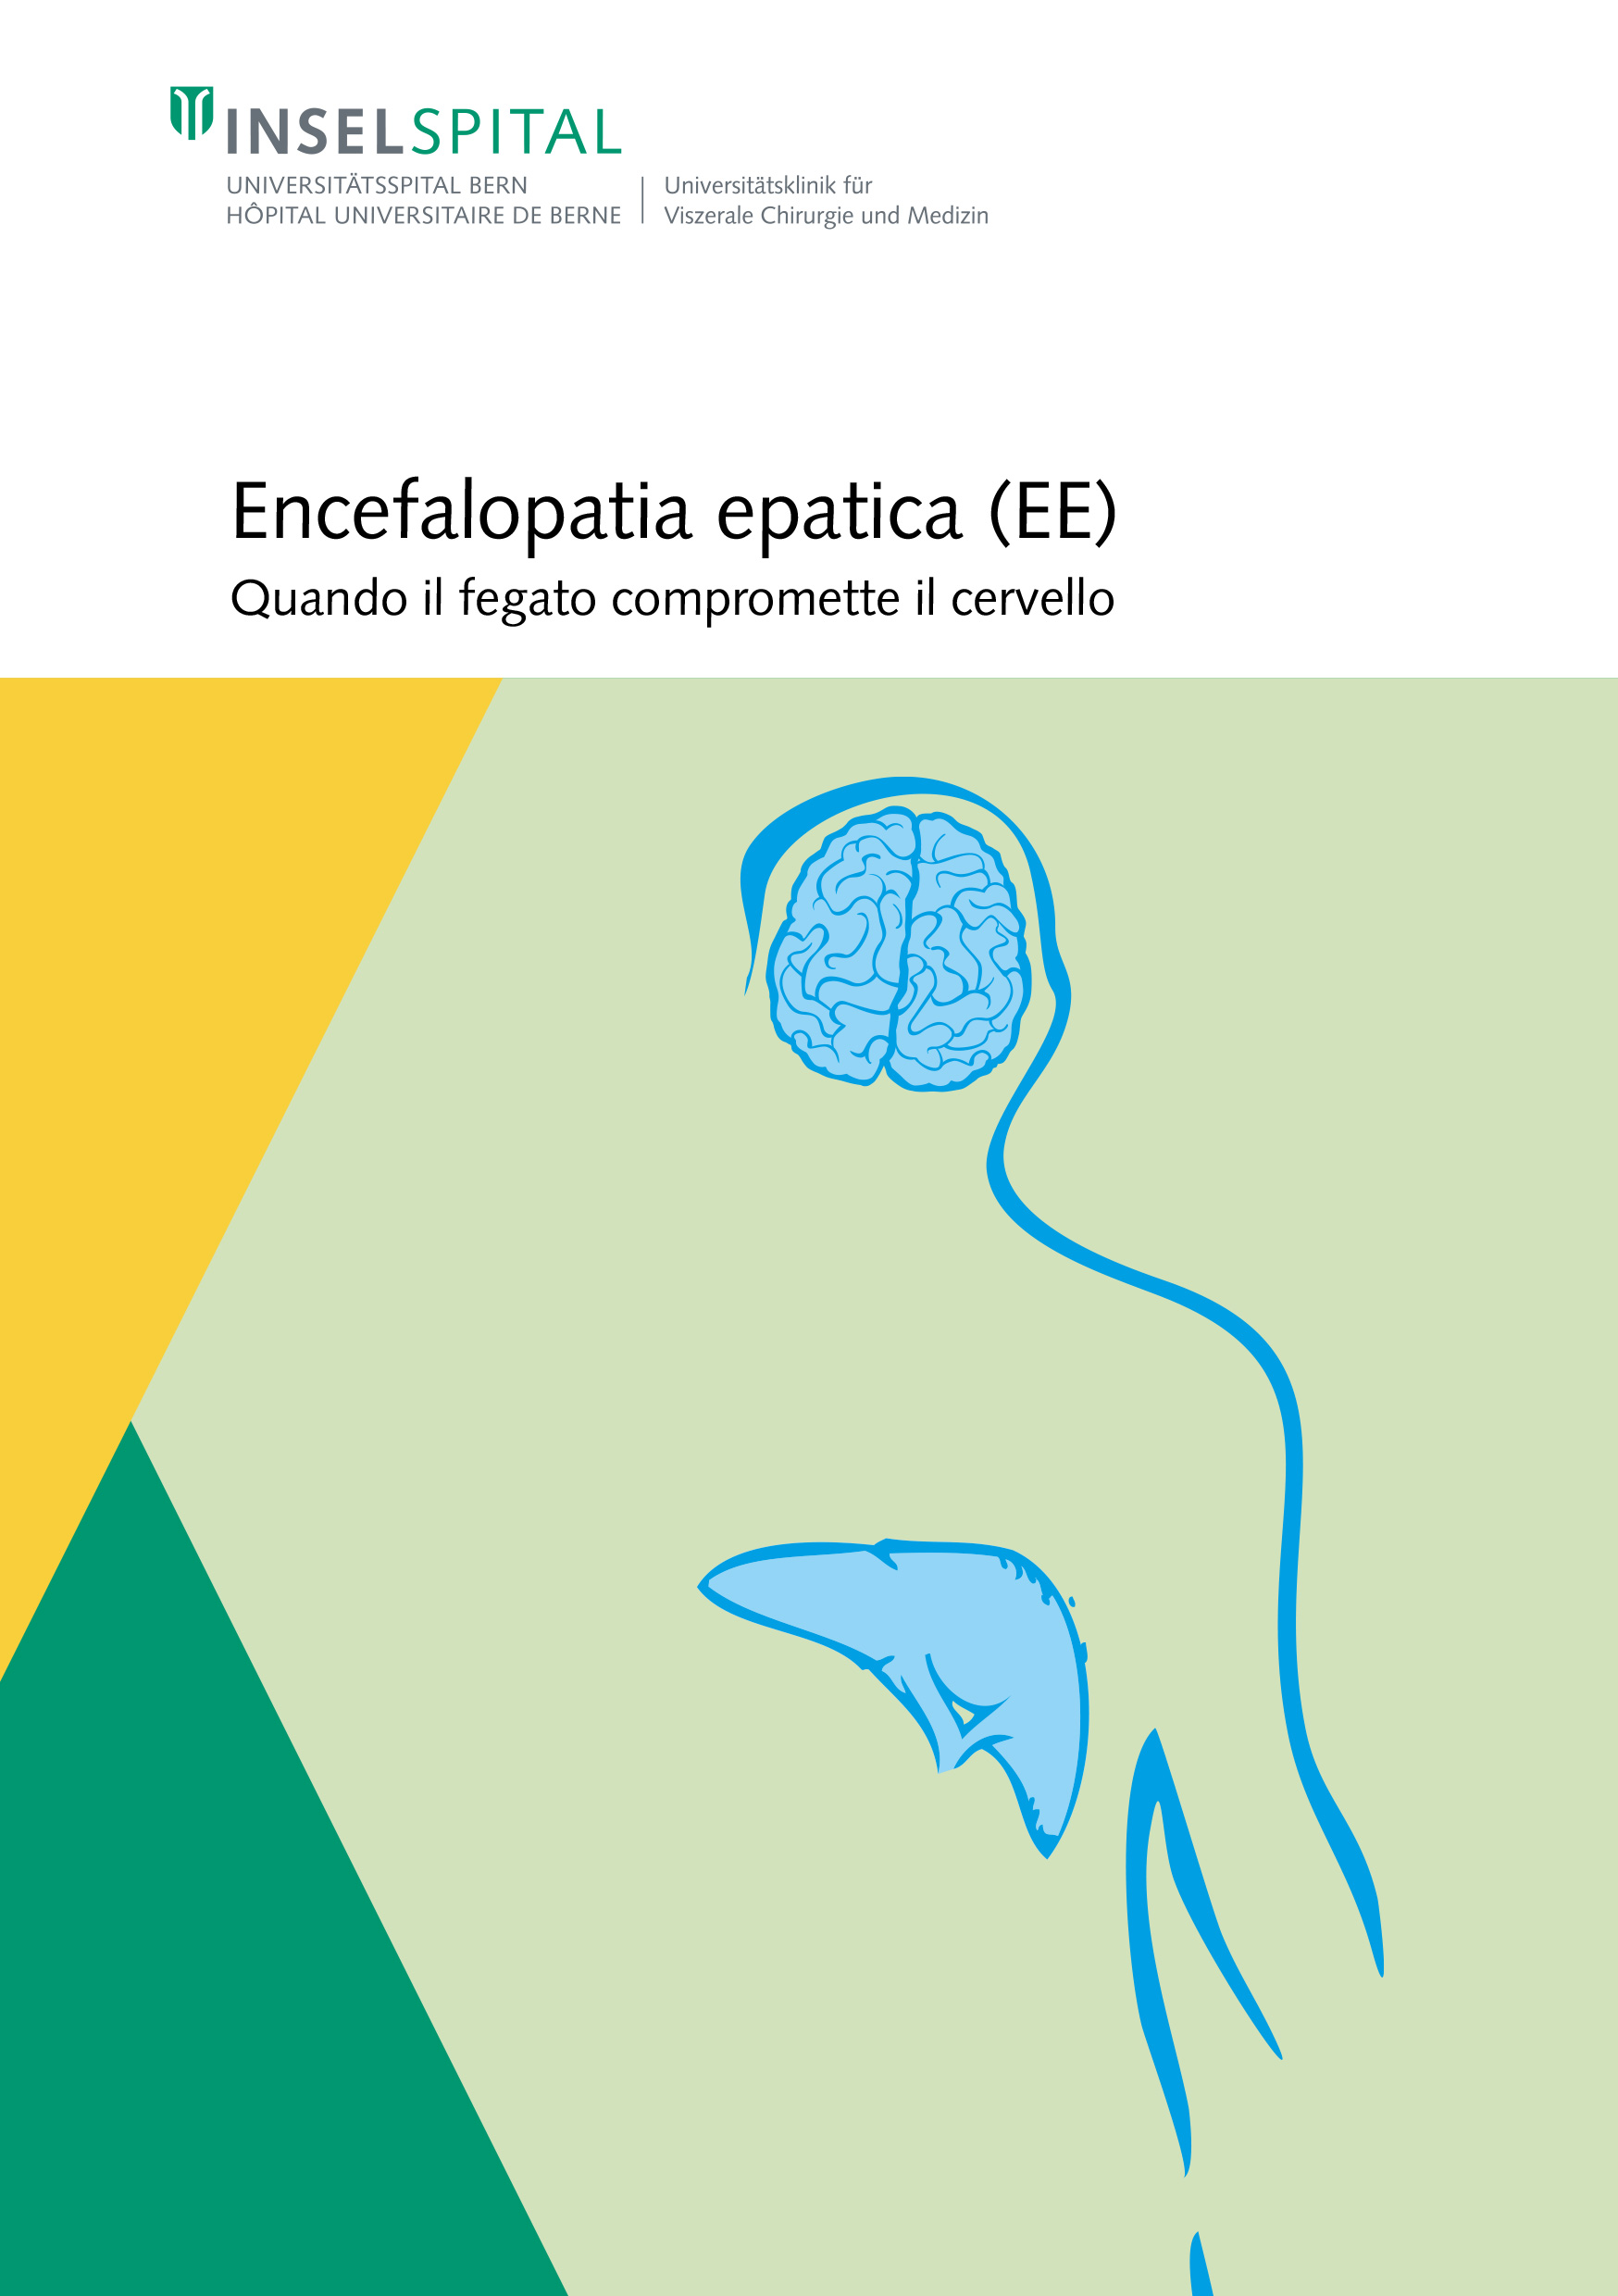 Brochure sull'encefalopatia epatica (HE)